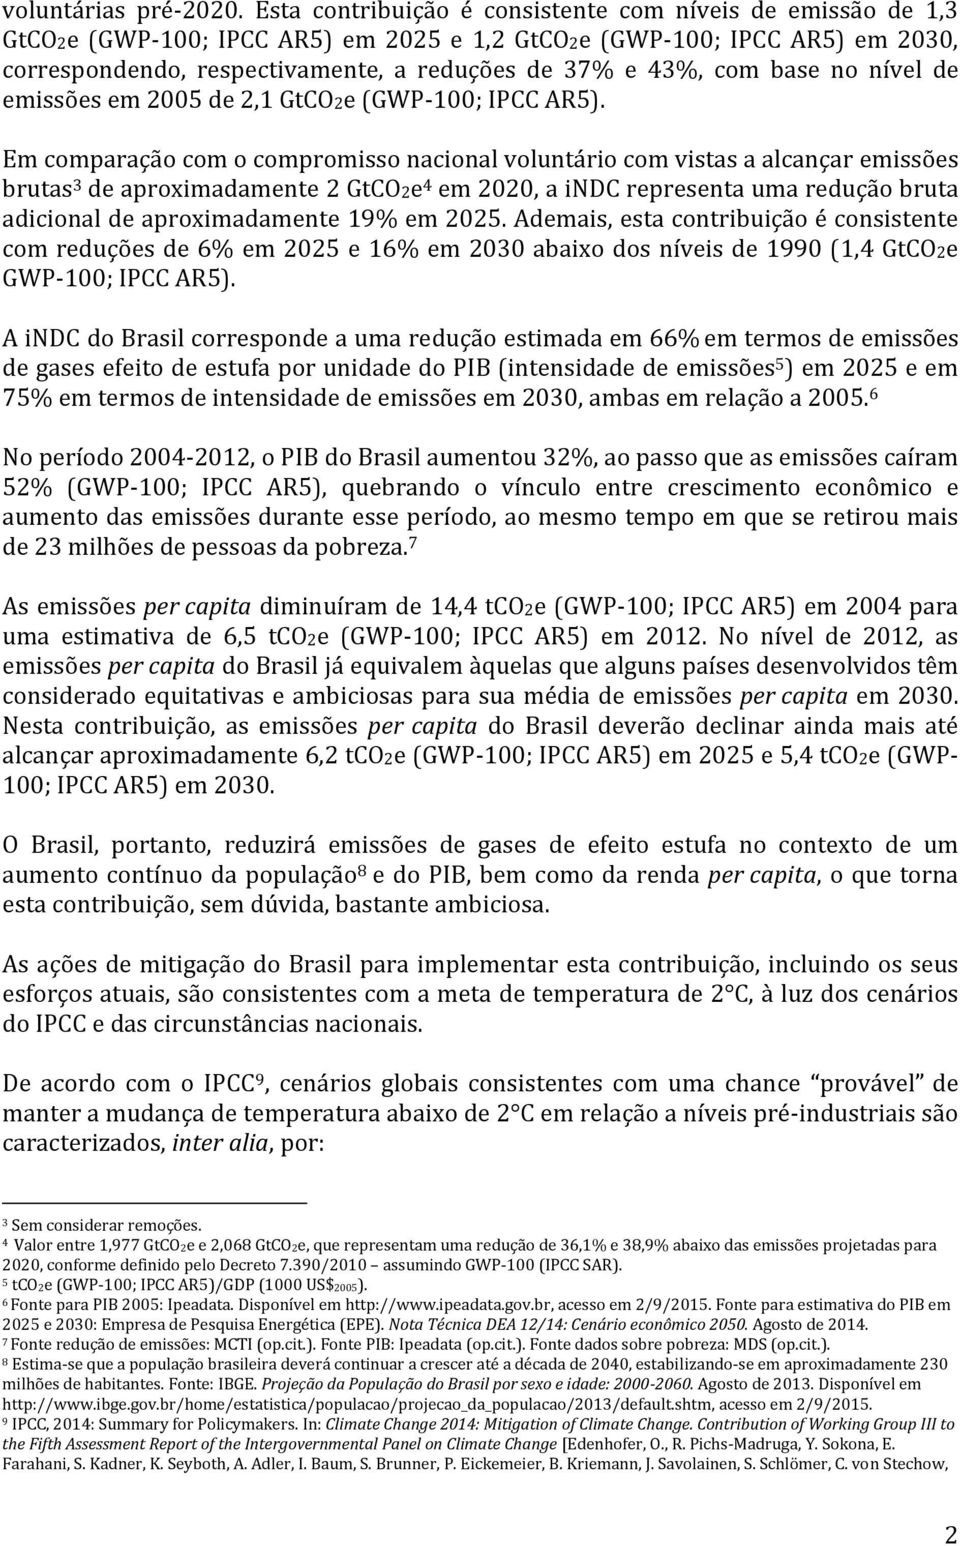 base no nível de emissões em 2005 de 2,1 GtCO2e (GWP-100; IPCC AR5).